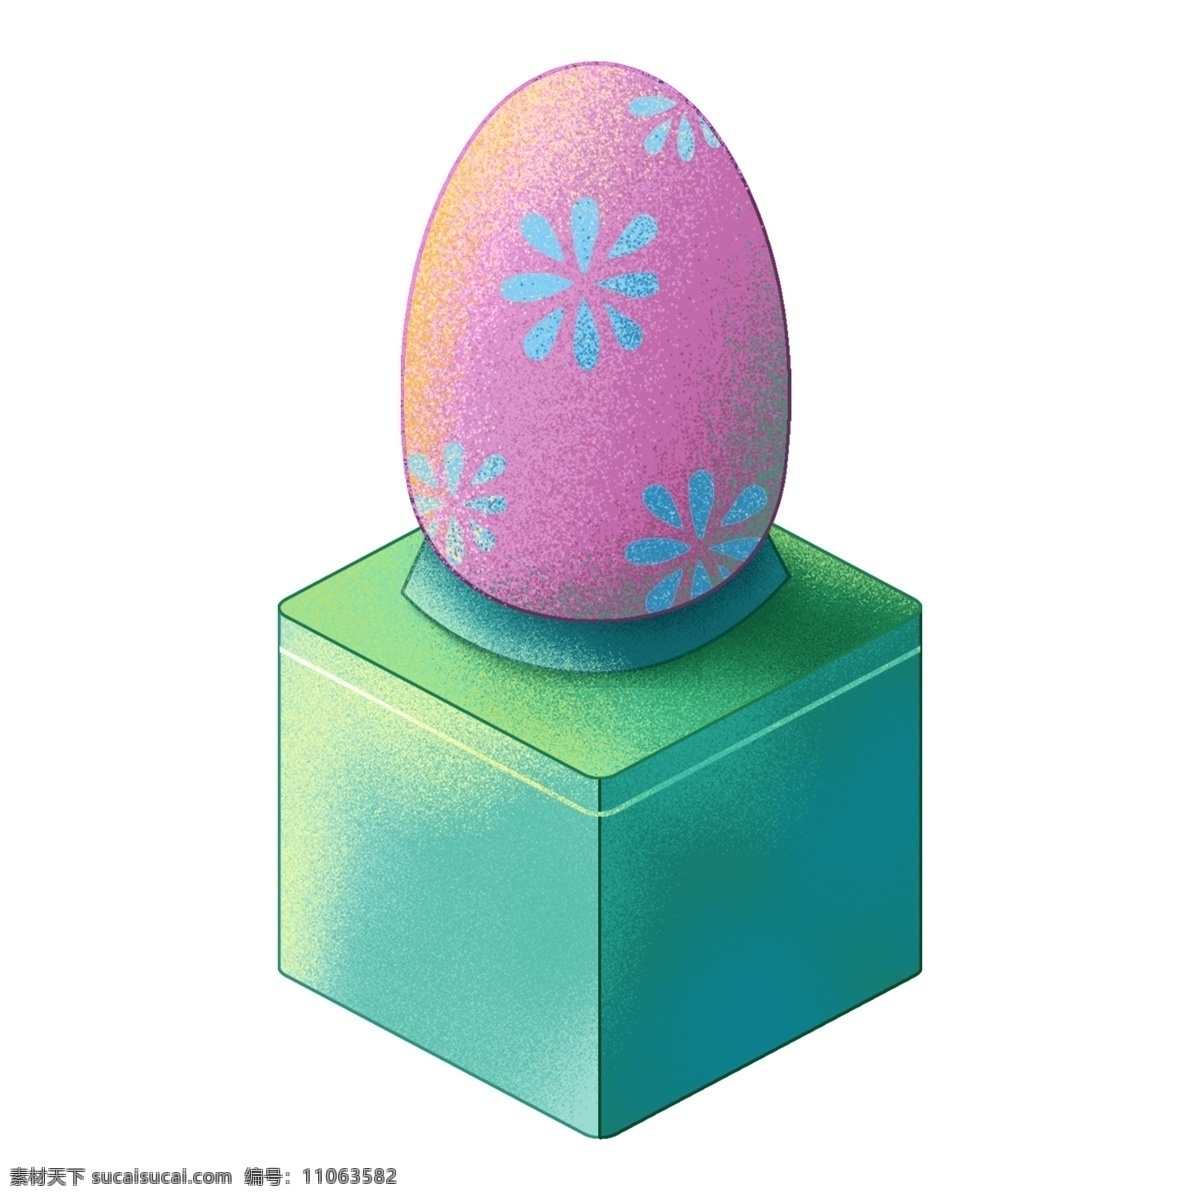 彩色 手绘 卡通 节日 彩蛋 元素 免扣素材 庆祝 喜庆 立体彩蛋 卡通彩蛋 精美彩蛋